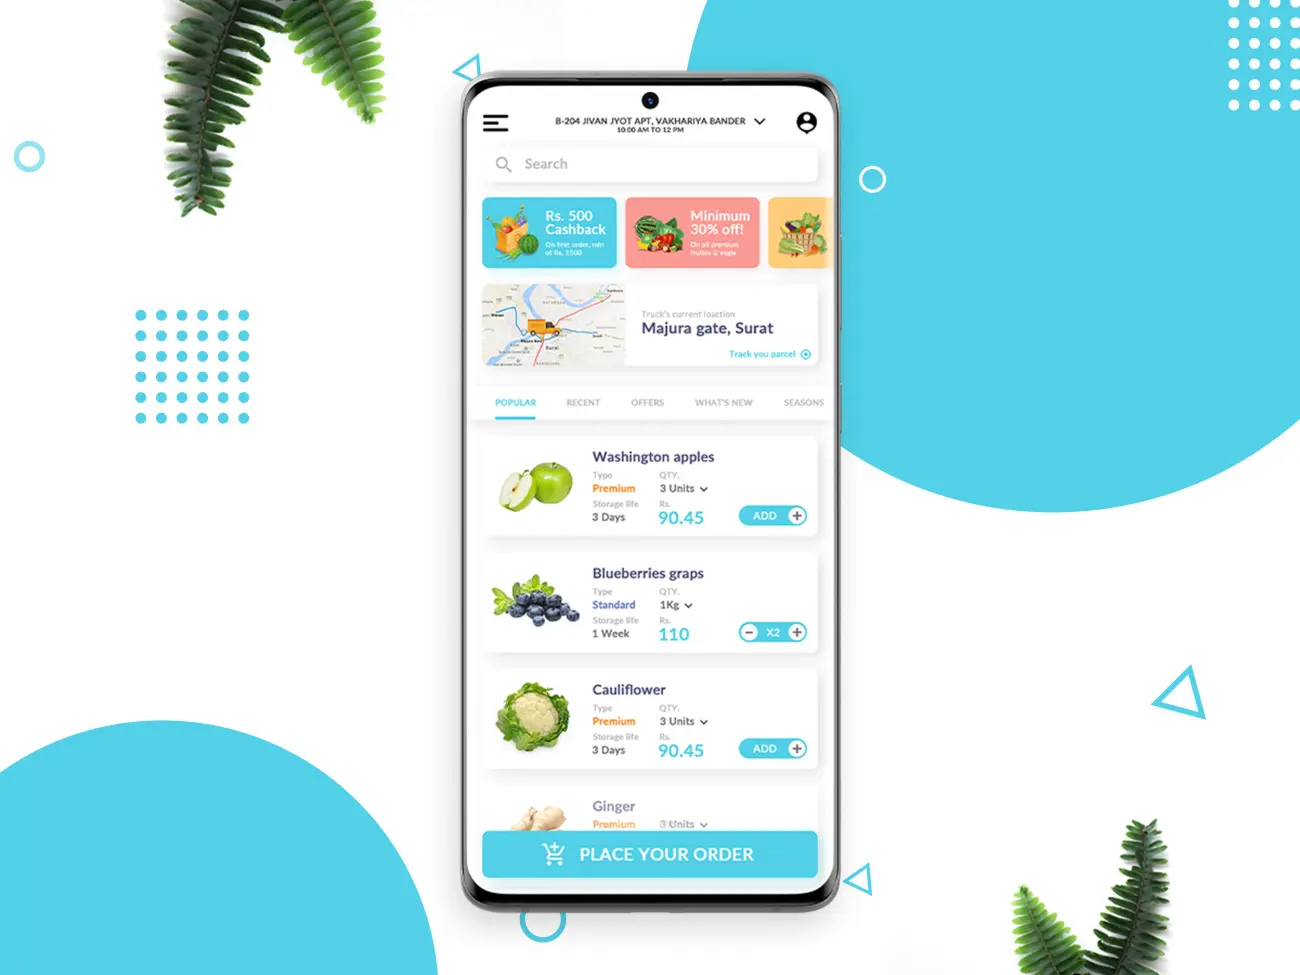 在线生鲜水果网购日生活用百货采购应用UI素材 online grocery shopping app ui design插图1